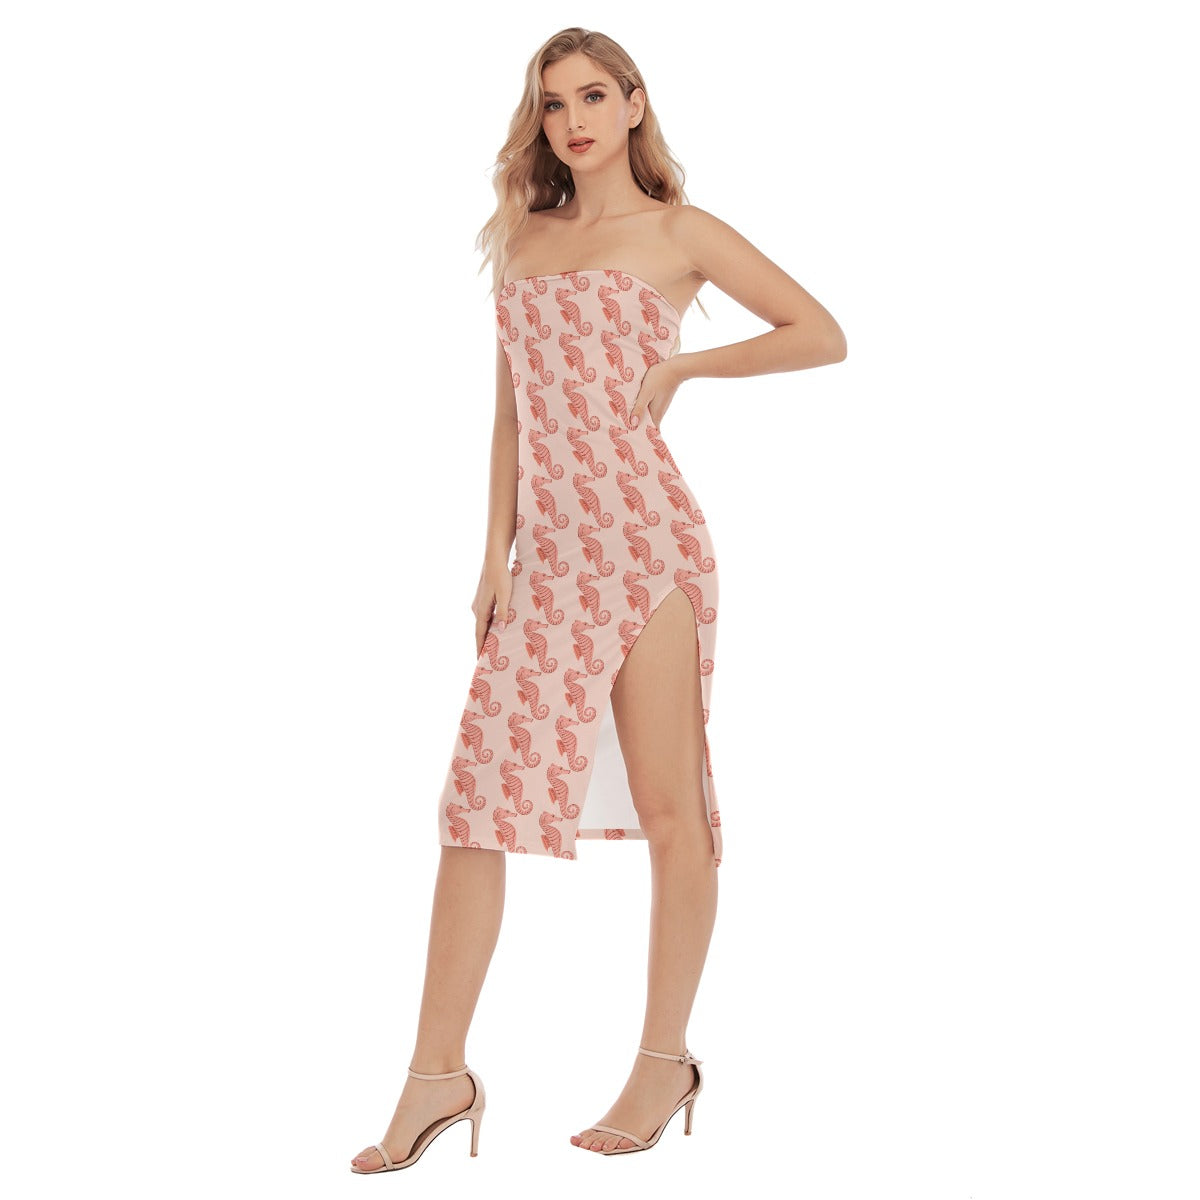 All-Over Print Women's Side Split Tube Top Dress